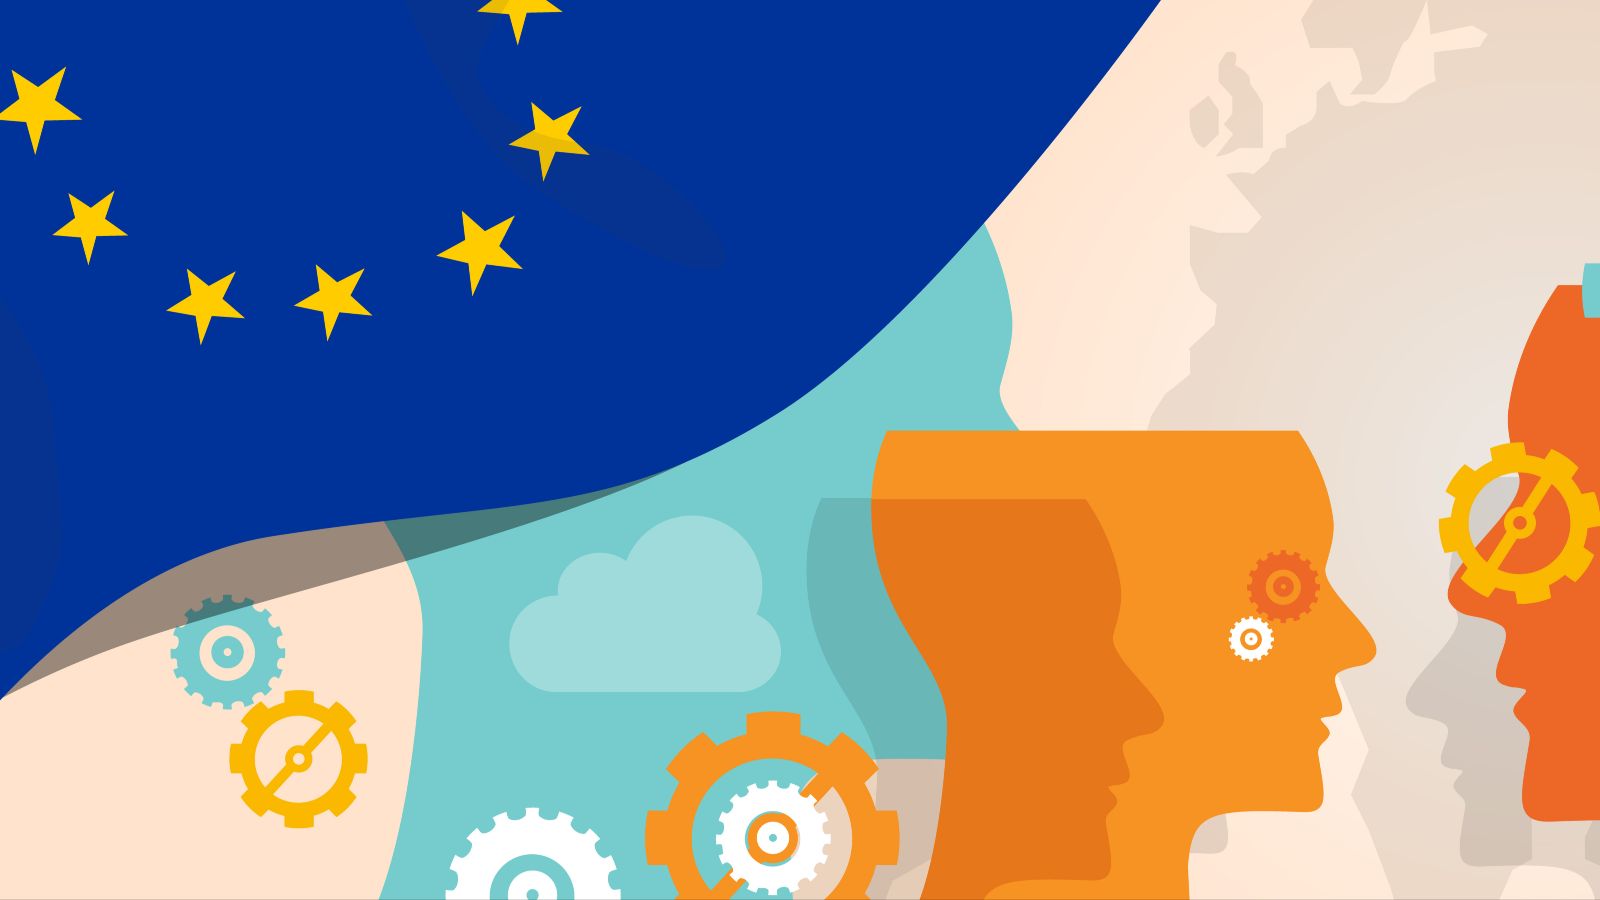 Vektorgrafik mit einer EU-Flagge in der linken Ecke, Zahnrädern und mehreren Silhouetten von Köpfen, die oben geöffnet sind.